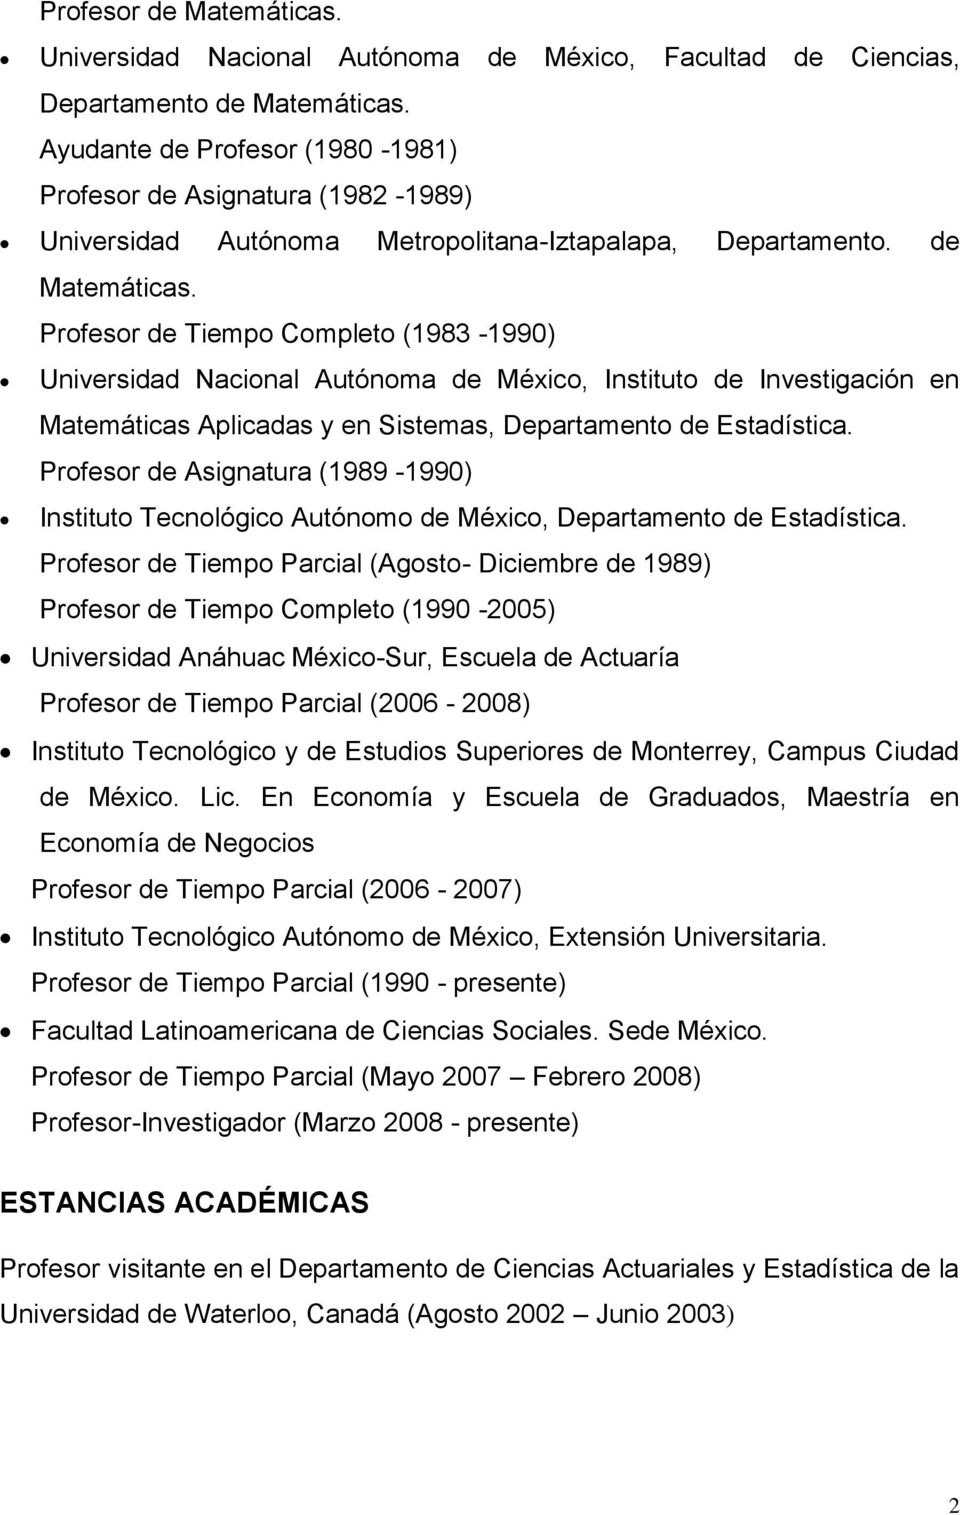 Profesor de Tiempo Completo (1983-1990) Universidad Nacional Autónoma de México, Instituto de Investigación en Matemáticas Aplicadas y en Sistemas, Departamento de Estadística.